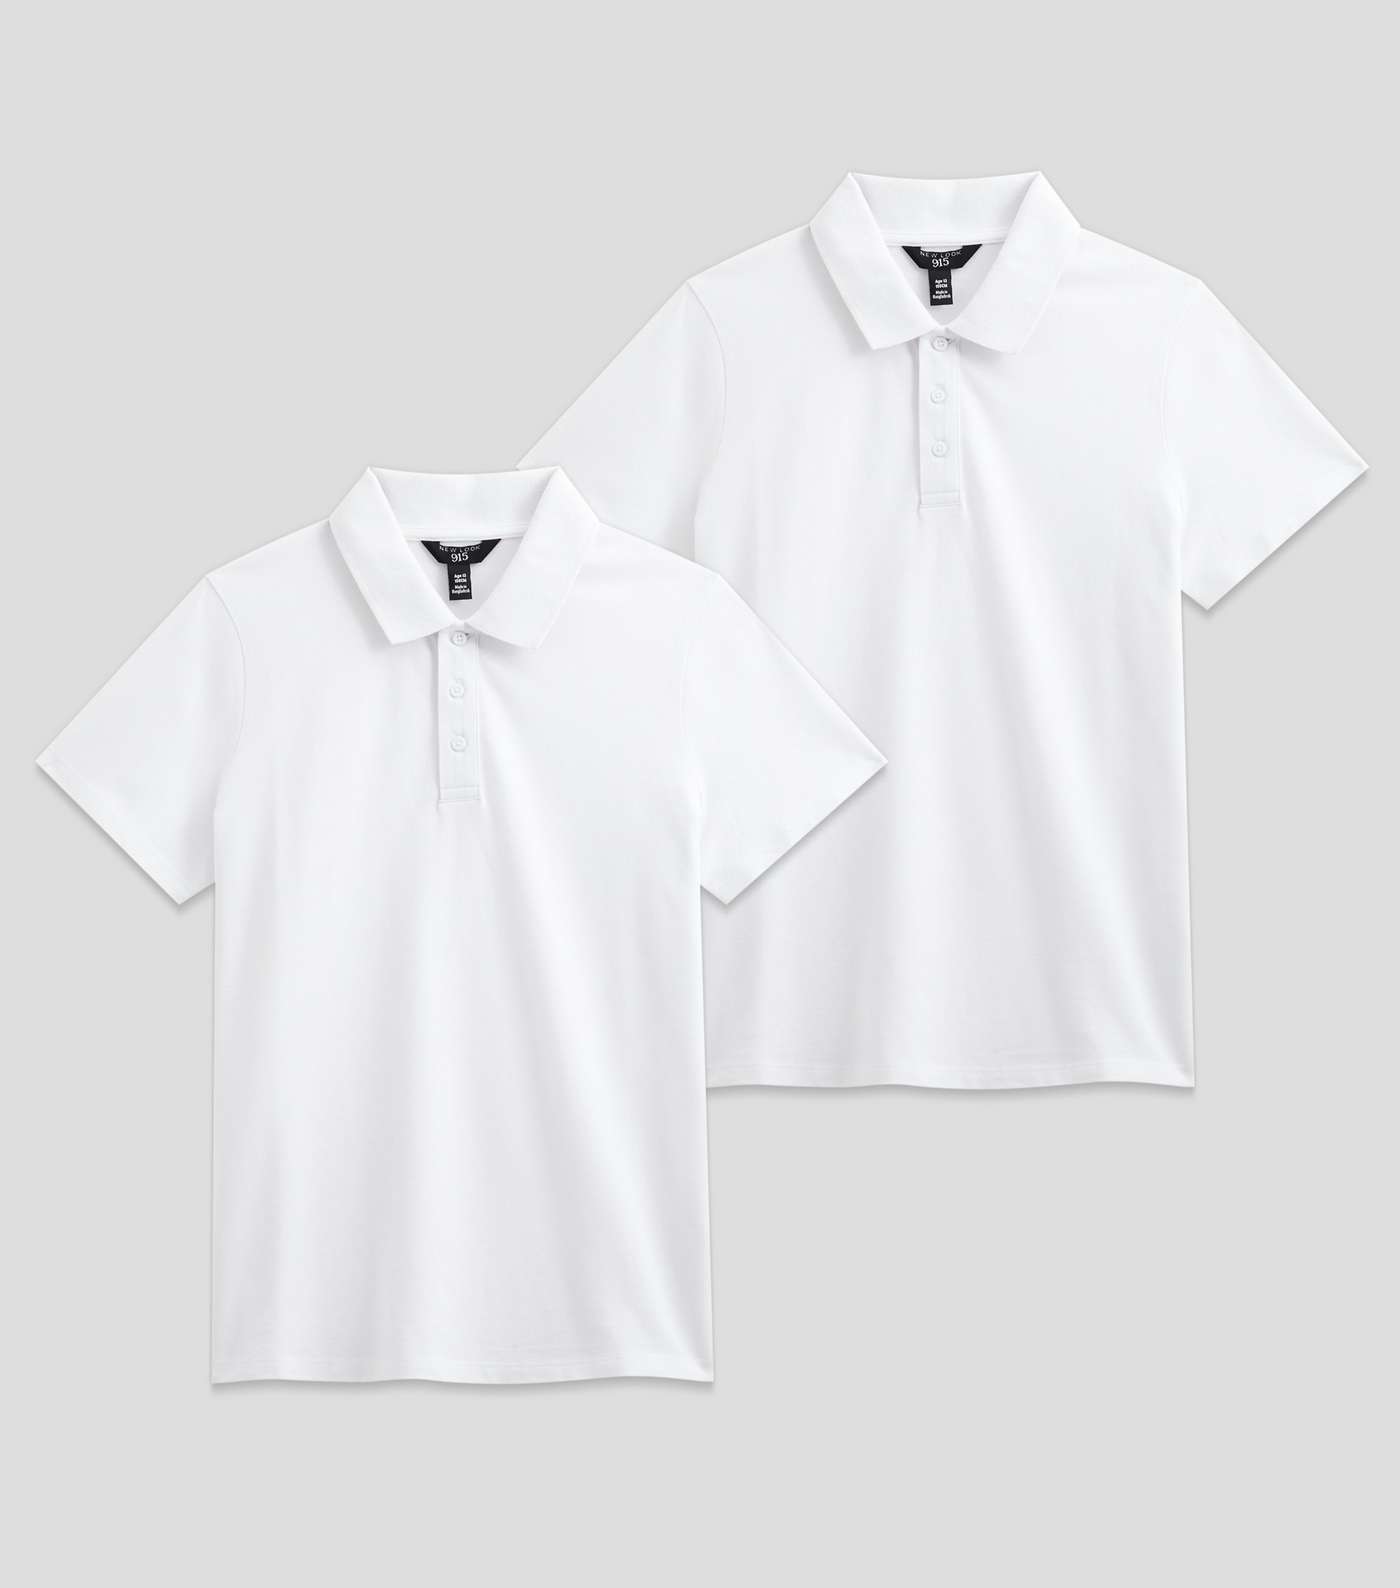 Girls 2 Pack White Unisex Short Sleeve School Polo Shirts Image 8